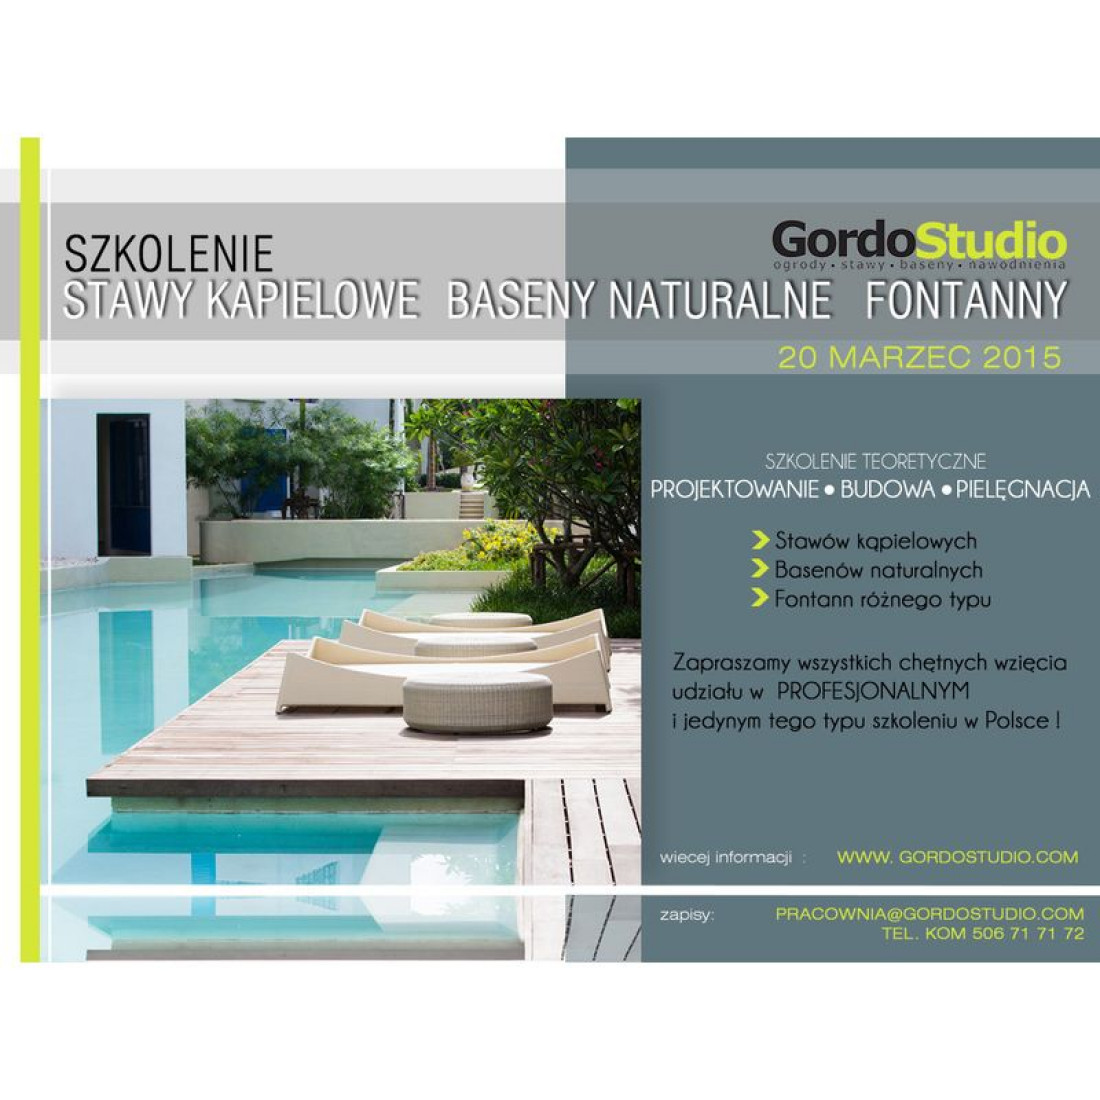 Szkolenie Gordo Studio już 20.03.2015 - projektowanie, budowa basenów, fontann